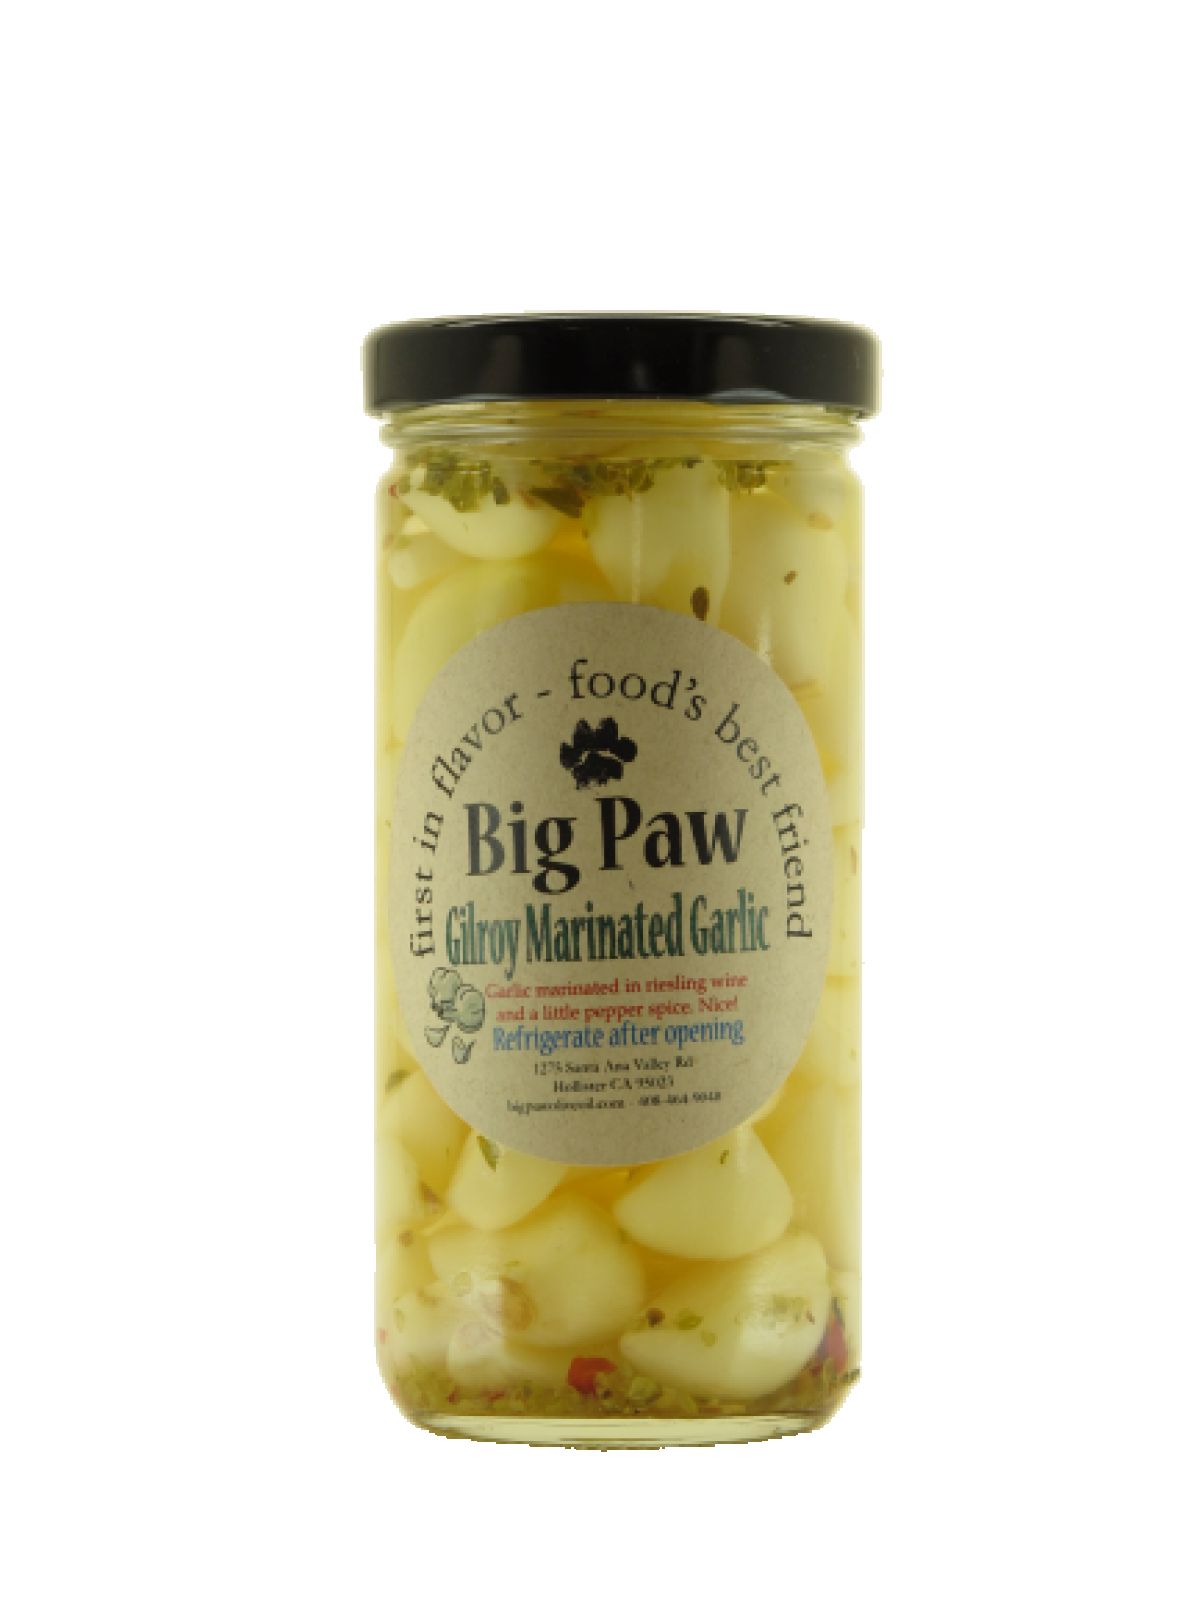 Gilroy Marinated Garlic 8 oz | Big Paw Olive Oil